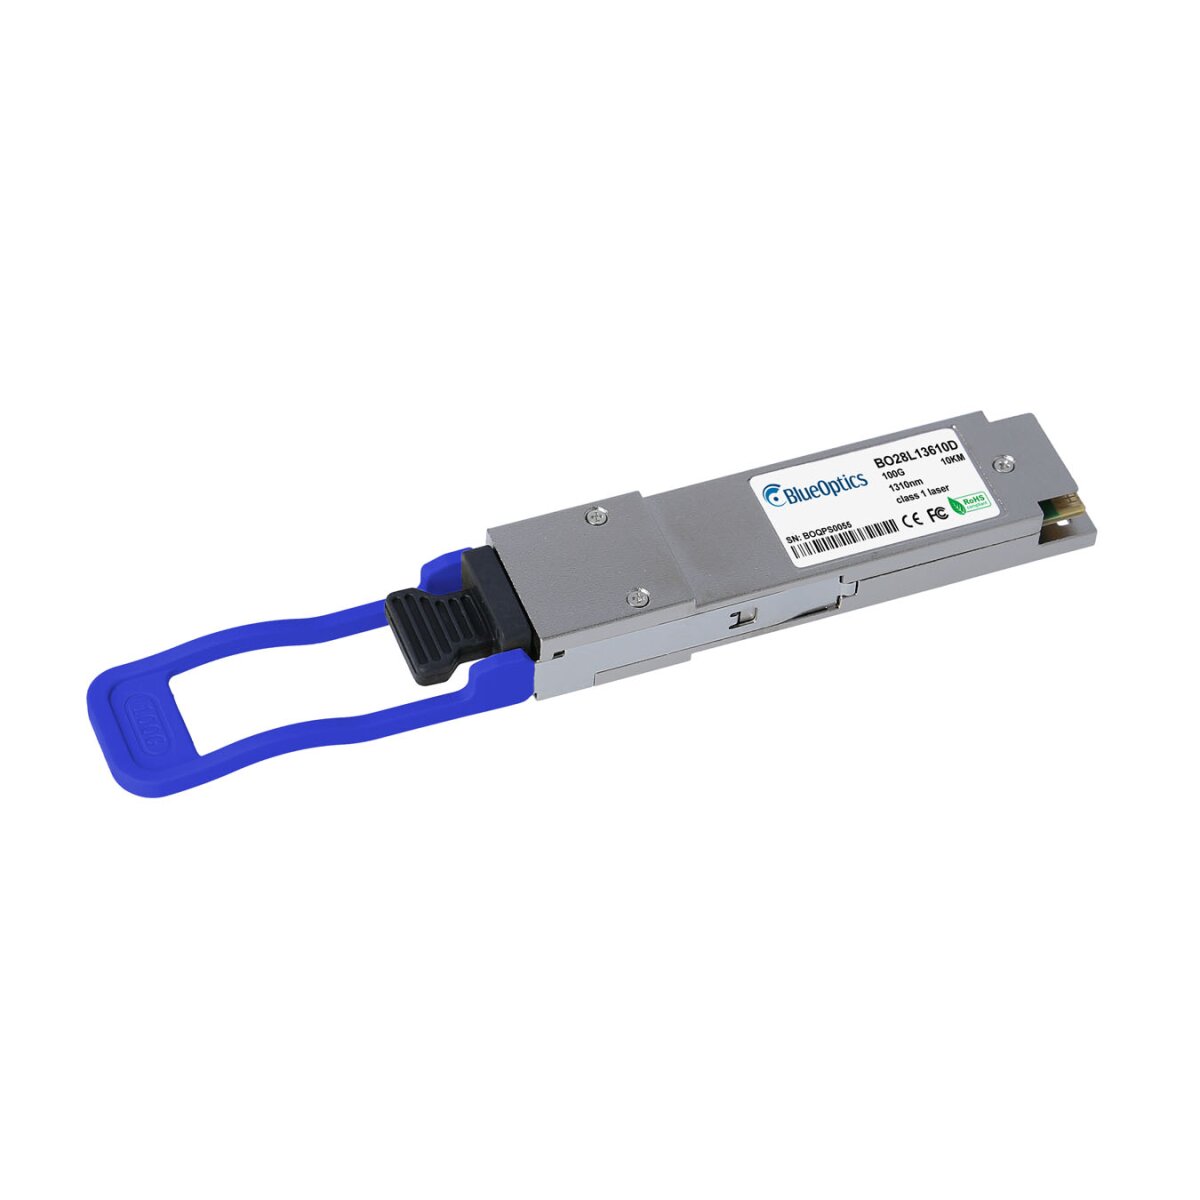 BlueOptics BO28L13610D QSFP28 Transceiver 100GBASE-LR4 10KM